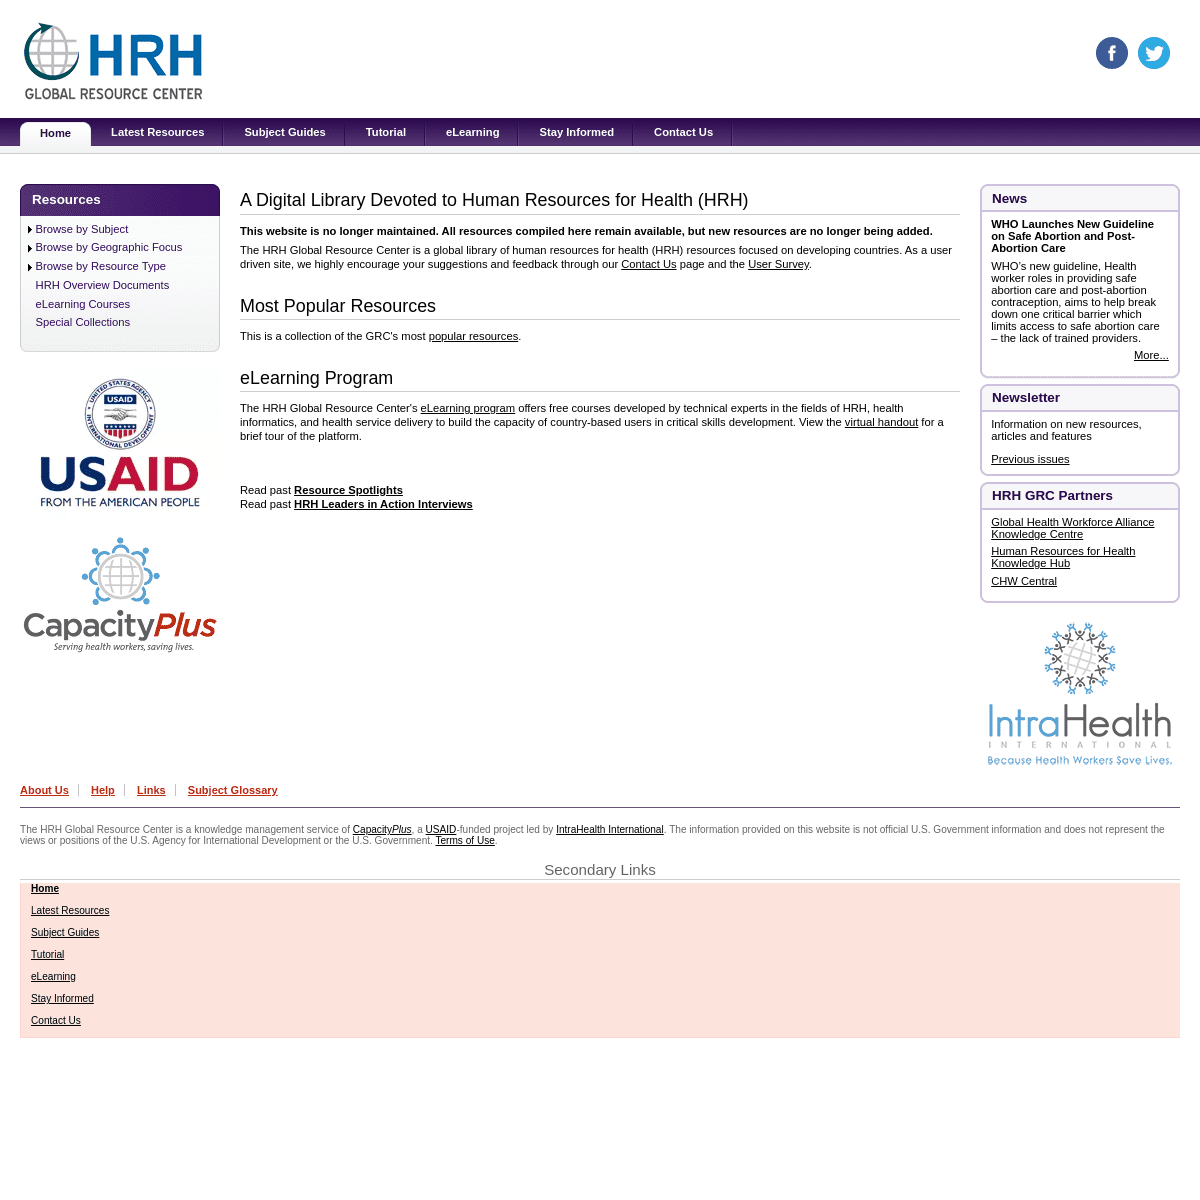 A complete backup of https://hrhresourcecenter.org